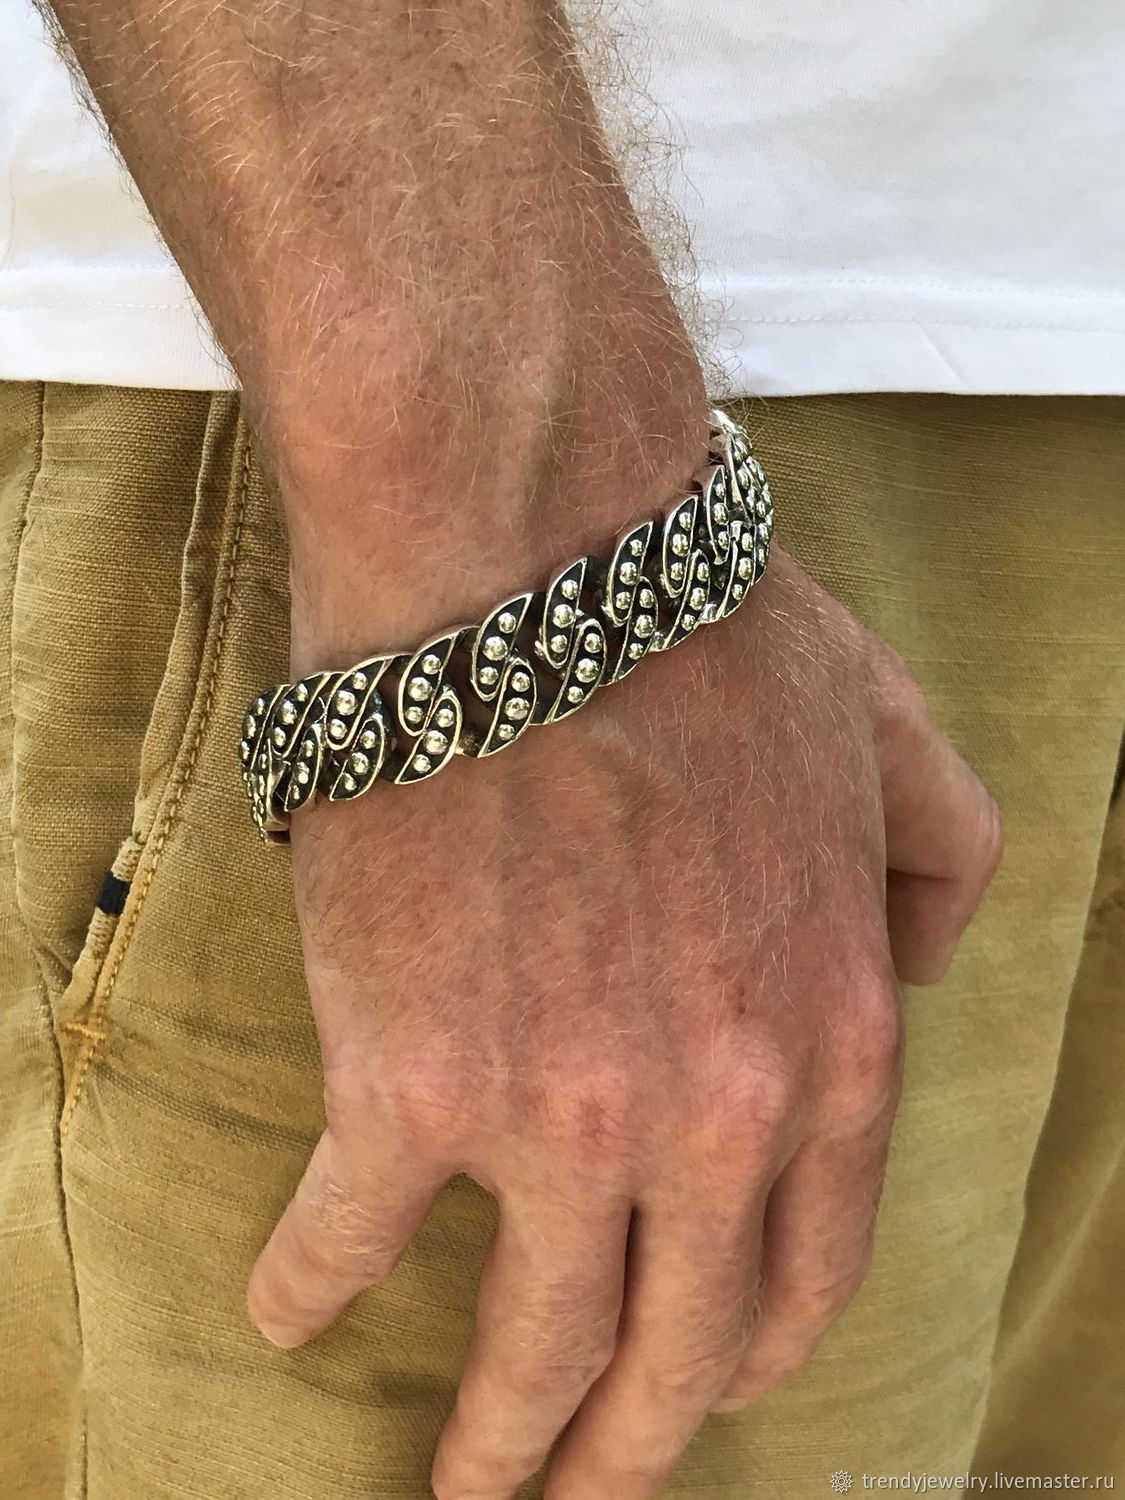 Плетения мужских браслетов на руке